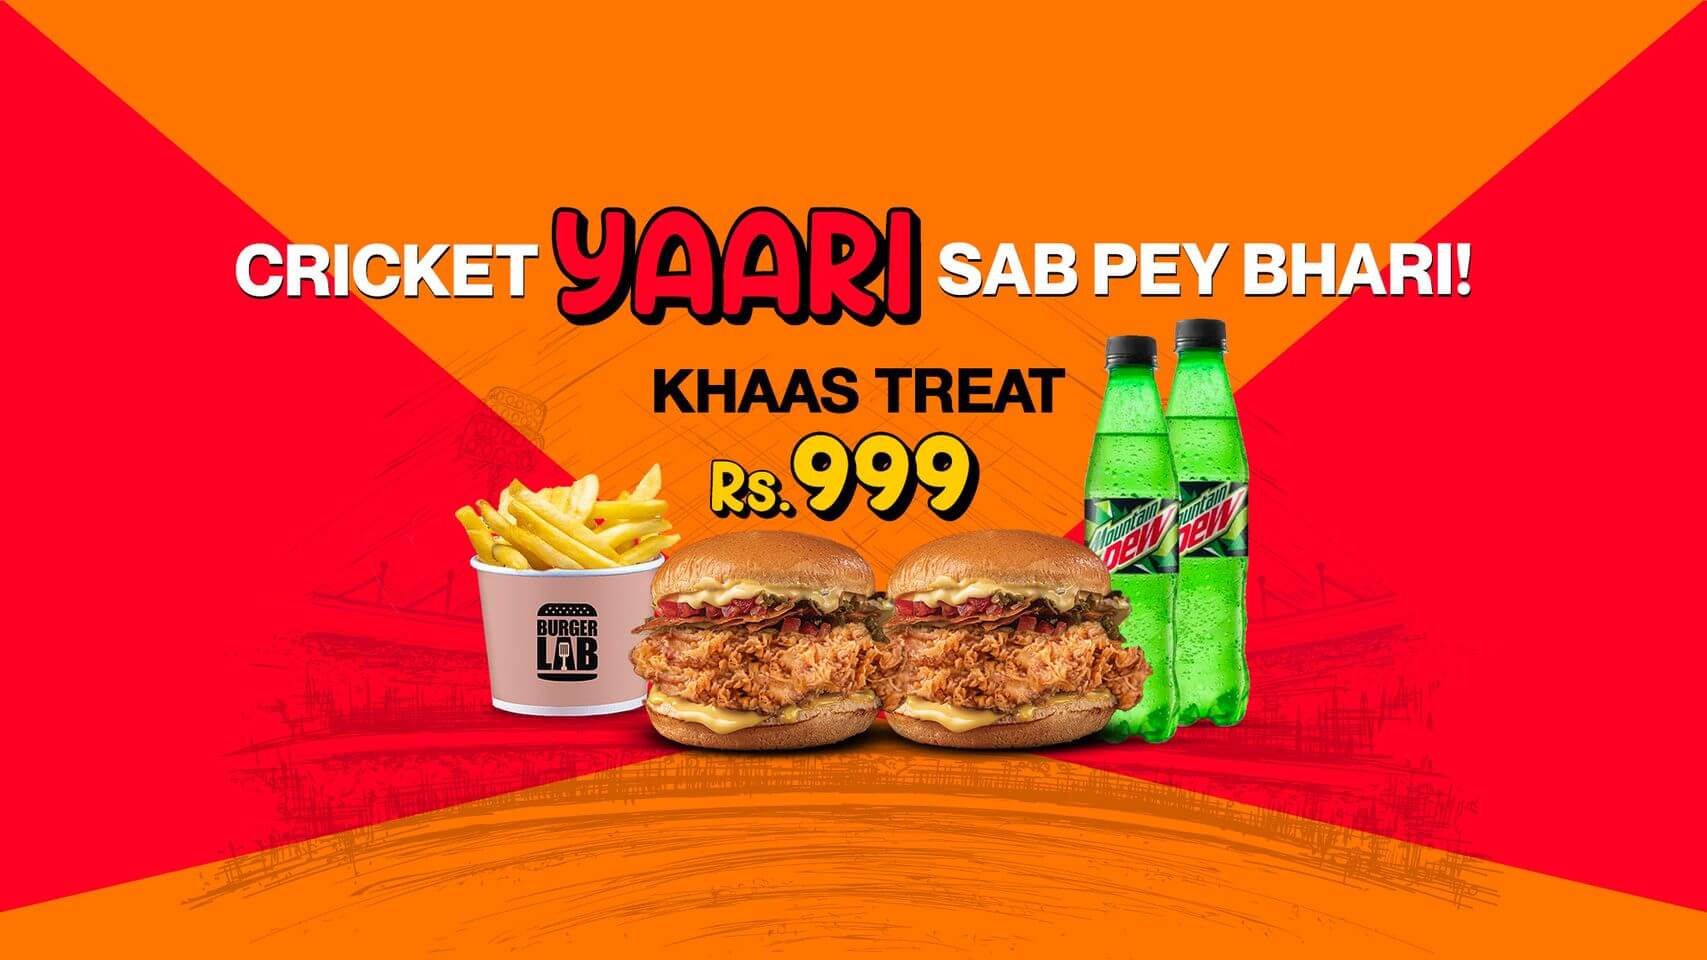 Burger Lab Khaas PSL Deal – Cricket Yaari Sab Pe Bhari! 